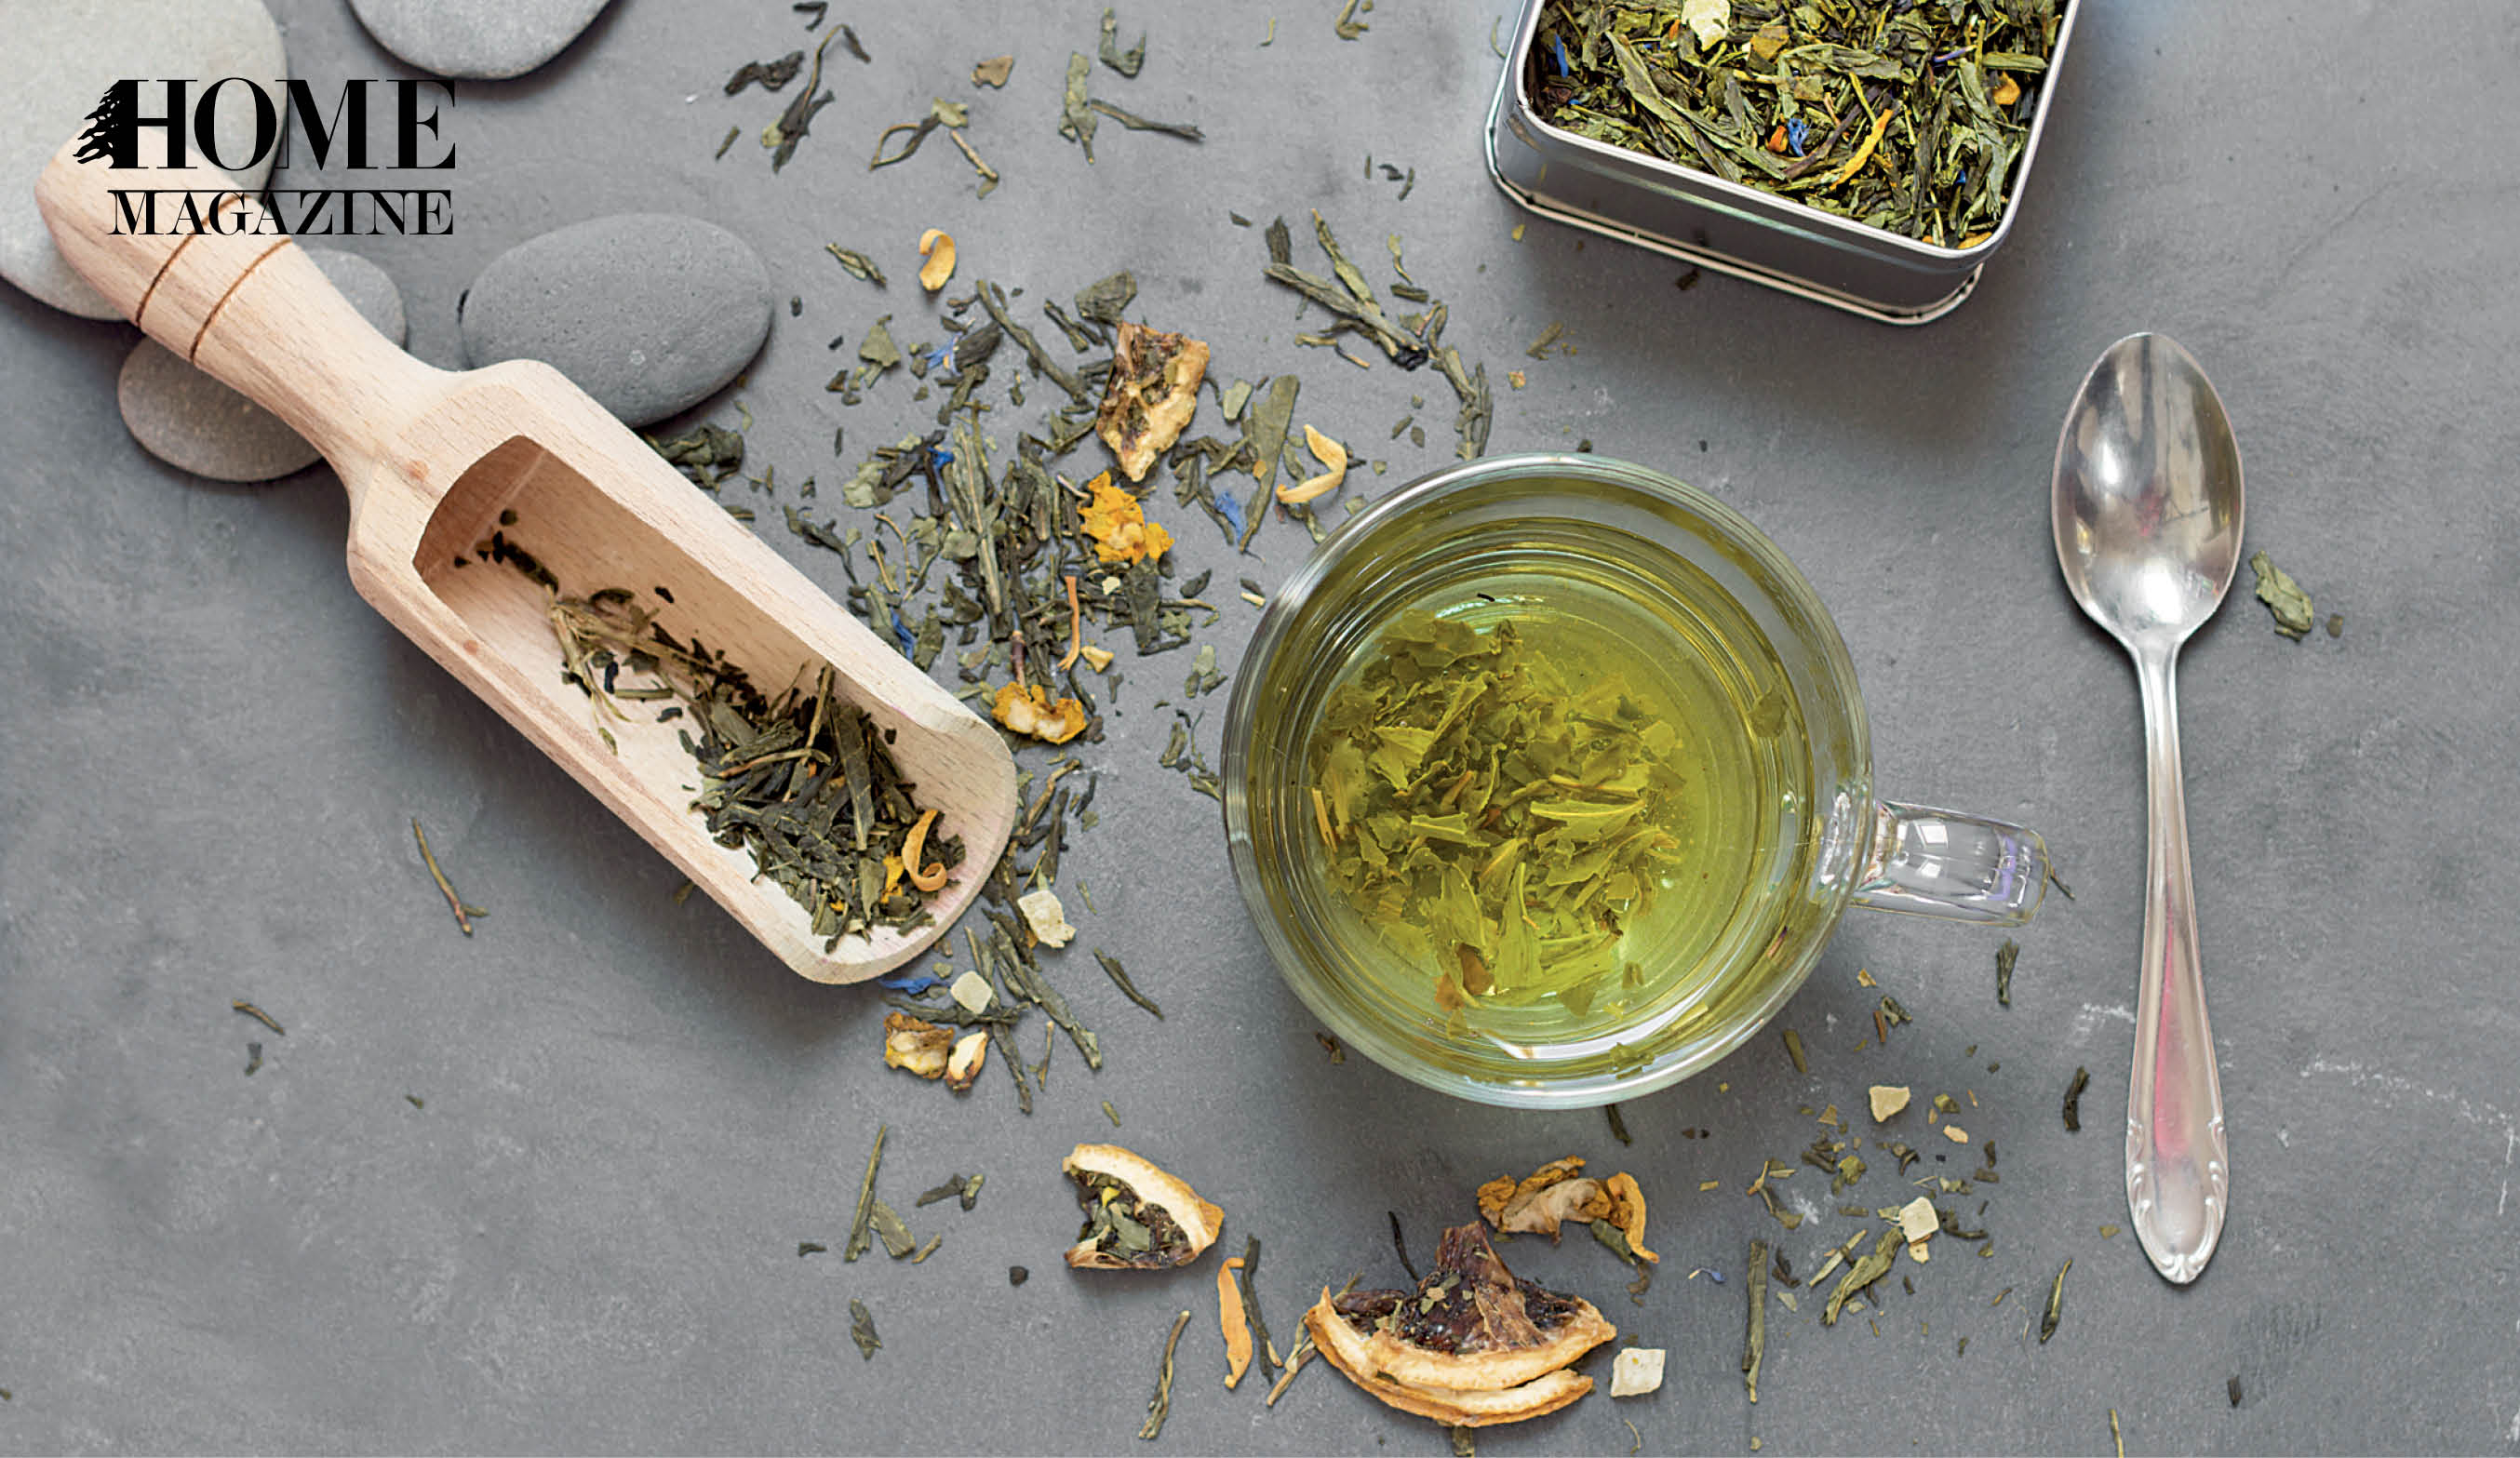 Green tea herbs, fluid green tea in cup, and spoon